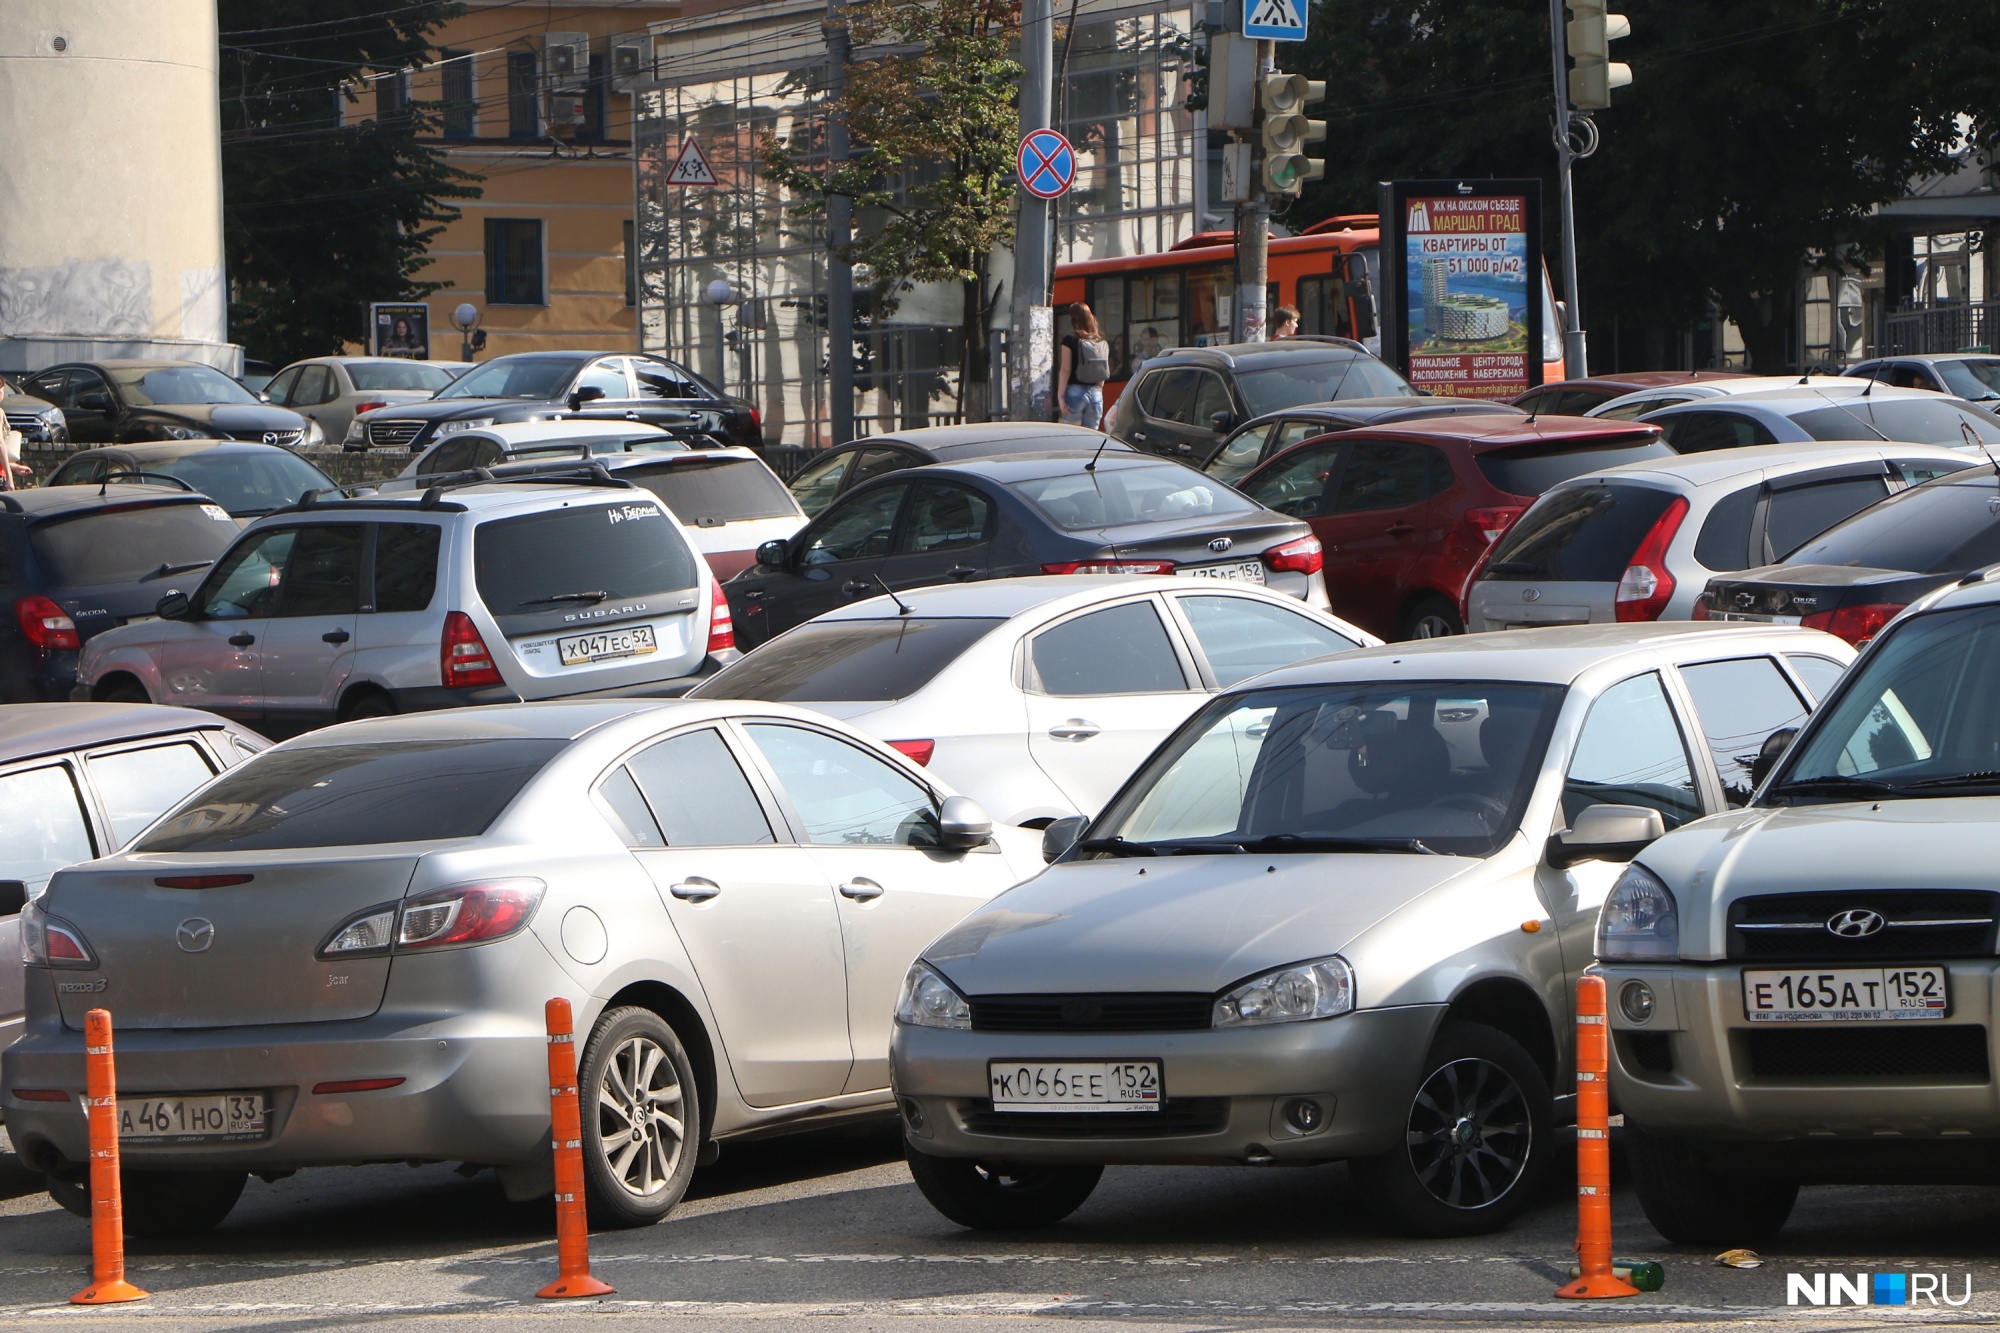 Новые платные парковки в центре Нижнего Новгорода намерены ввести в 2019 году